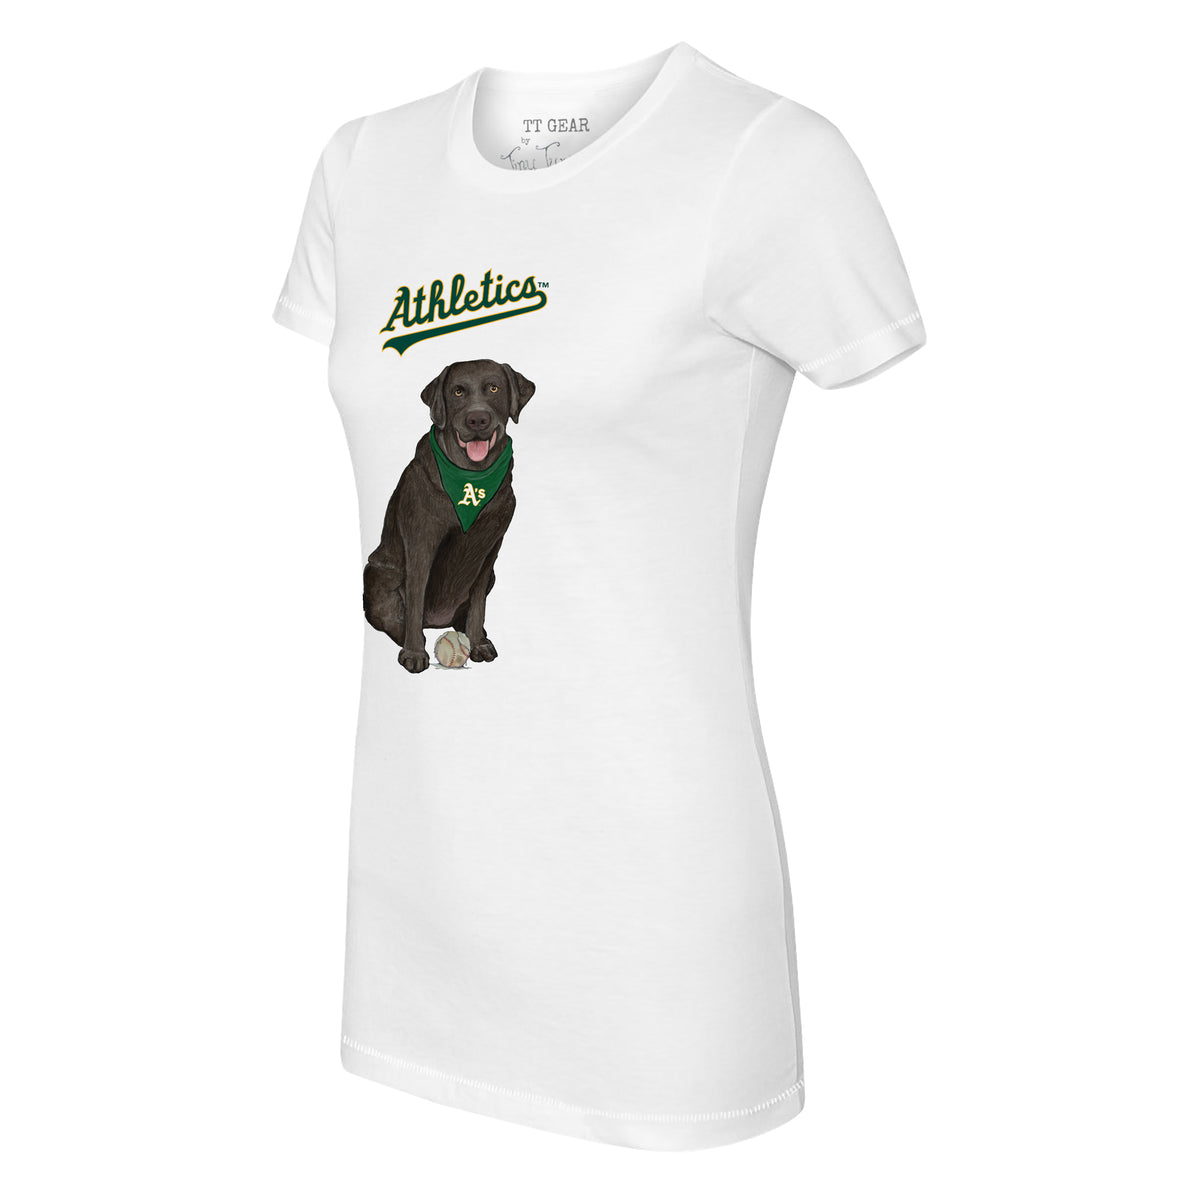 Oakland Athletics Black Labrador Retriever Tee Shirt